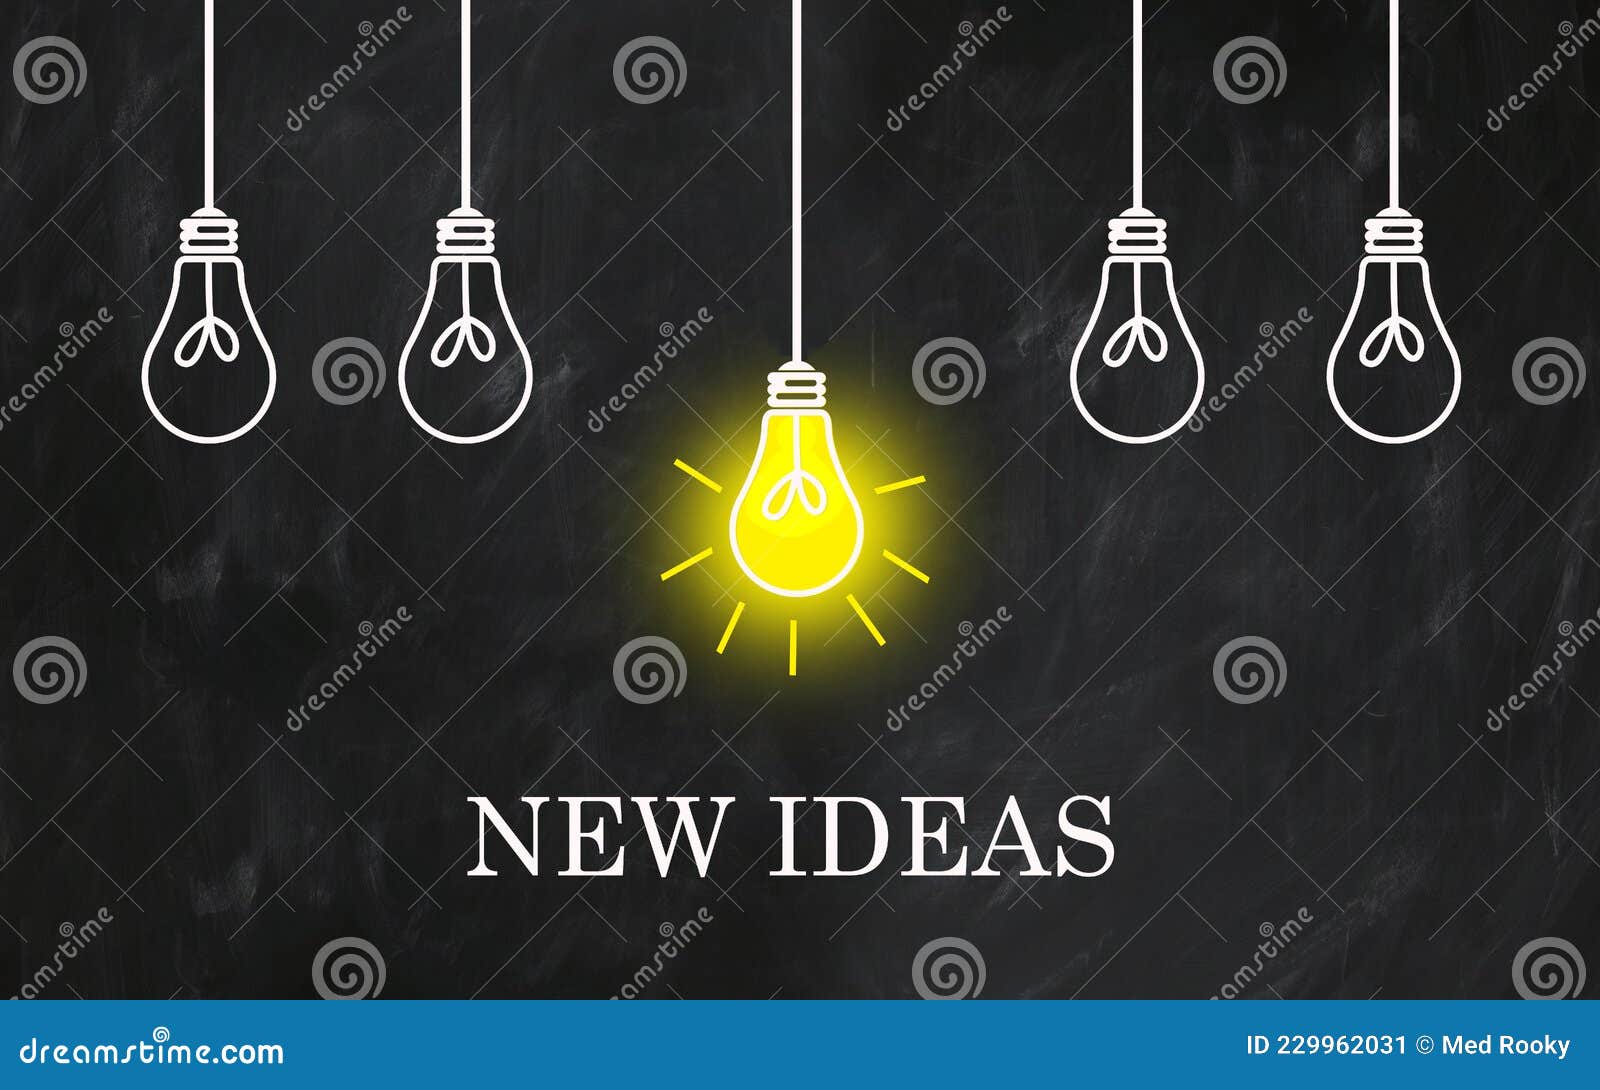 new ideas phrase with light bulbs on creative chalkboard